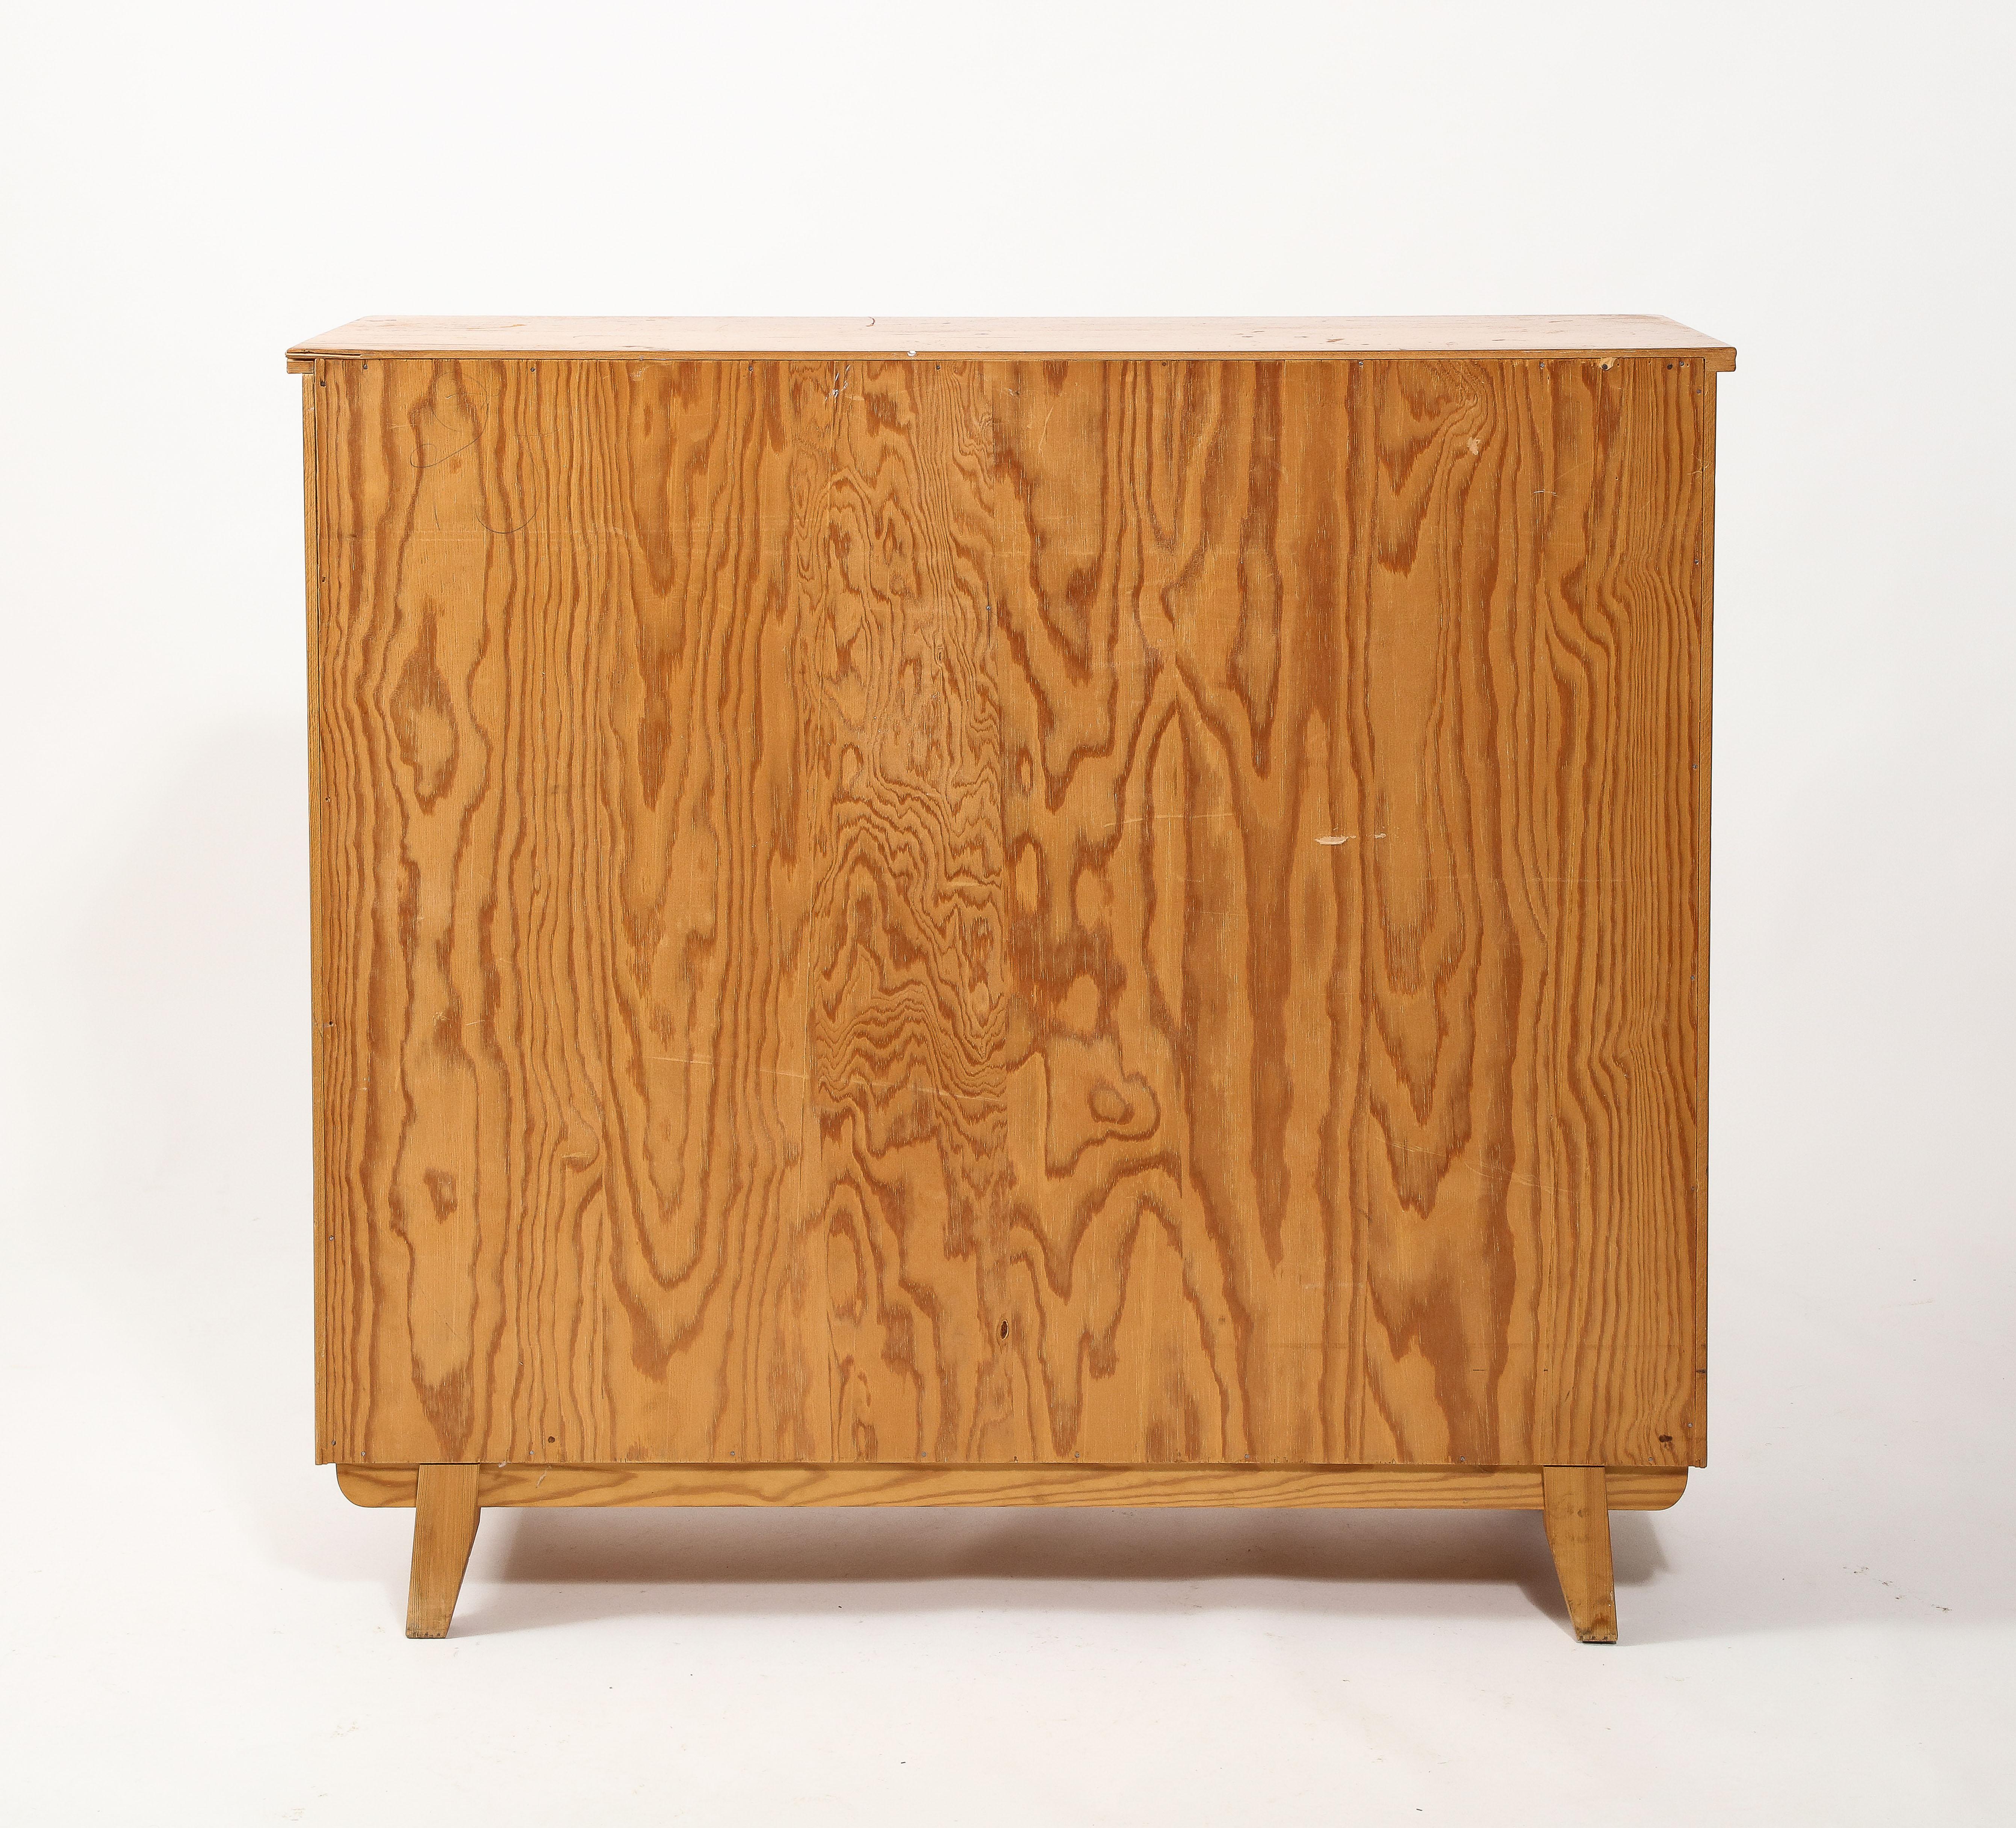 Göran Malmvall Svensk Stamped Modernist Rustic Pine Cabinet, Sweden 1950's For Sale 1